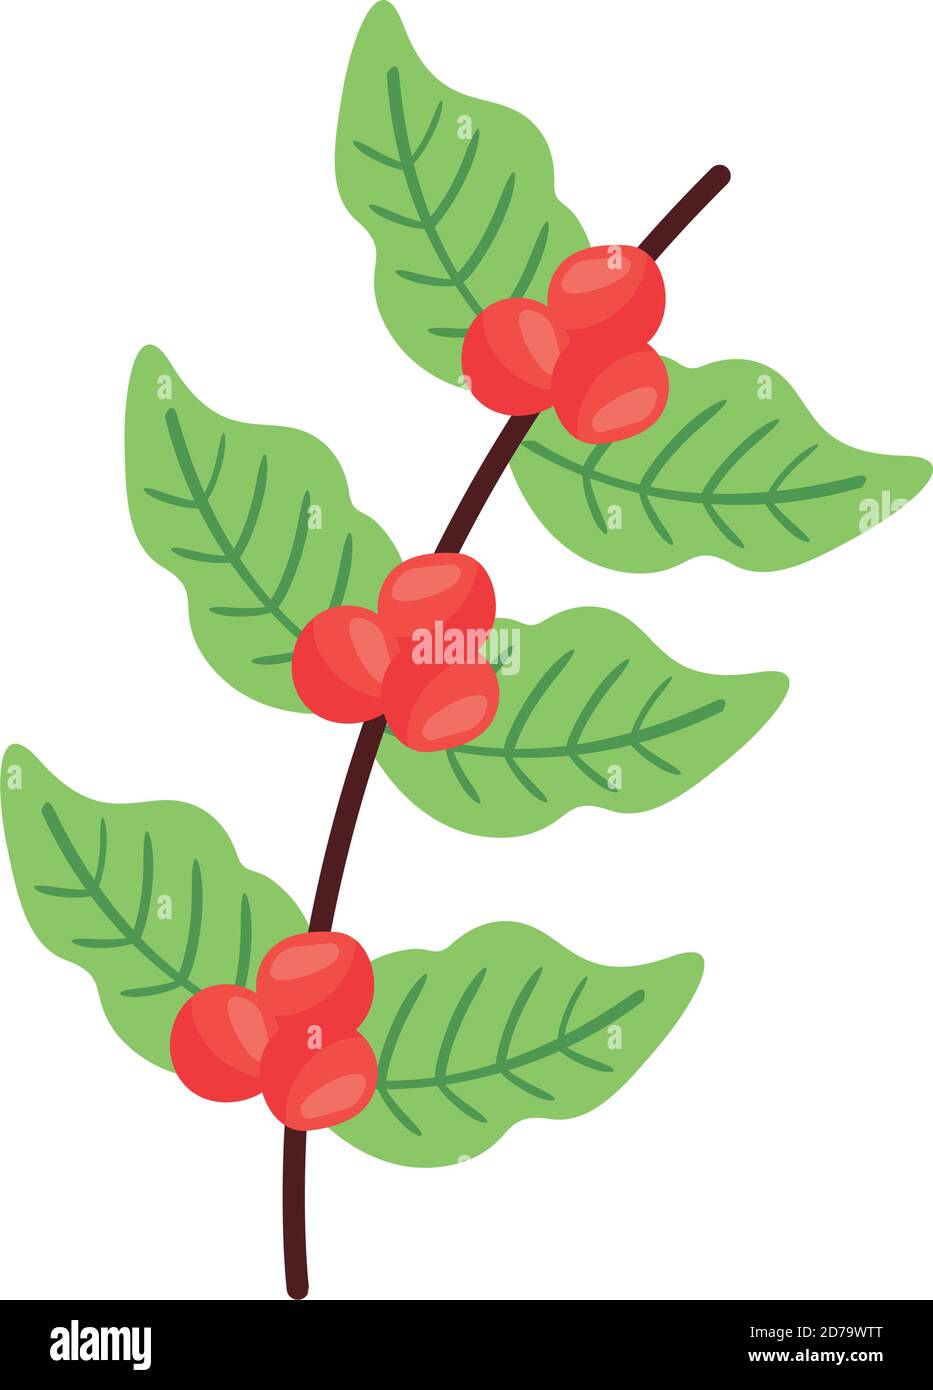 Hound Uanset hvilken udsættelse coffee plant grains and leafs nature flat icon vector illustration design  Stock Vector Image & Art - Alamy